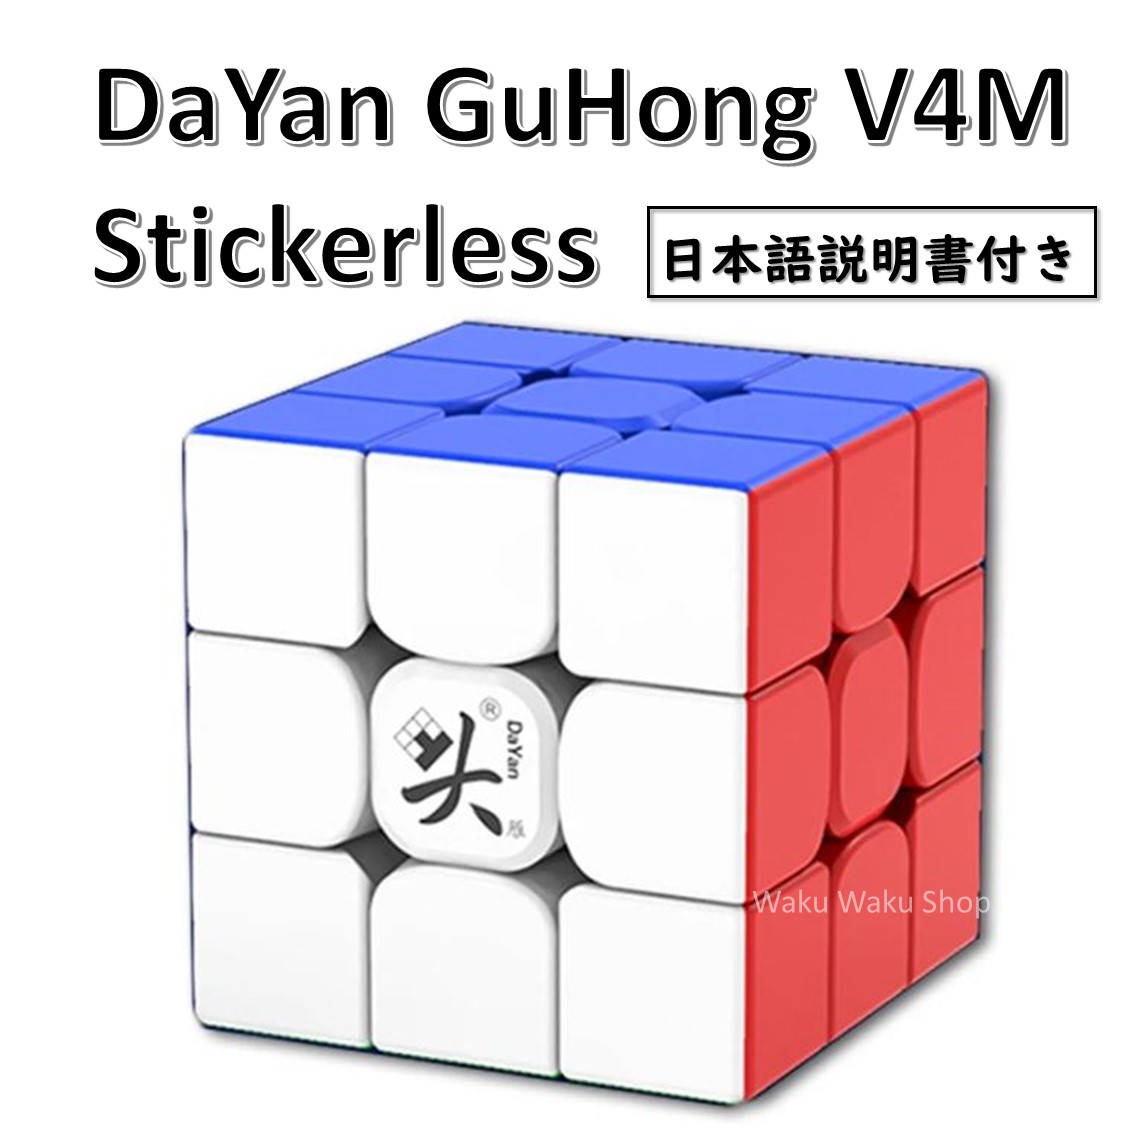 【日本語説明書付き】 【安心の保証付き】 【正規販売店】 DaYan GuHong V4M 磁石搭載 3x3x3キューブ ステッカーレス  ルービックキューブ おすすめ なめらか Waku Waku Shop 